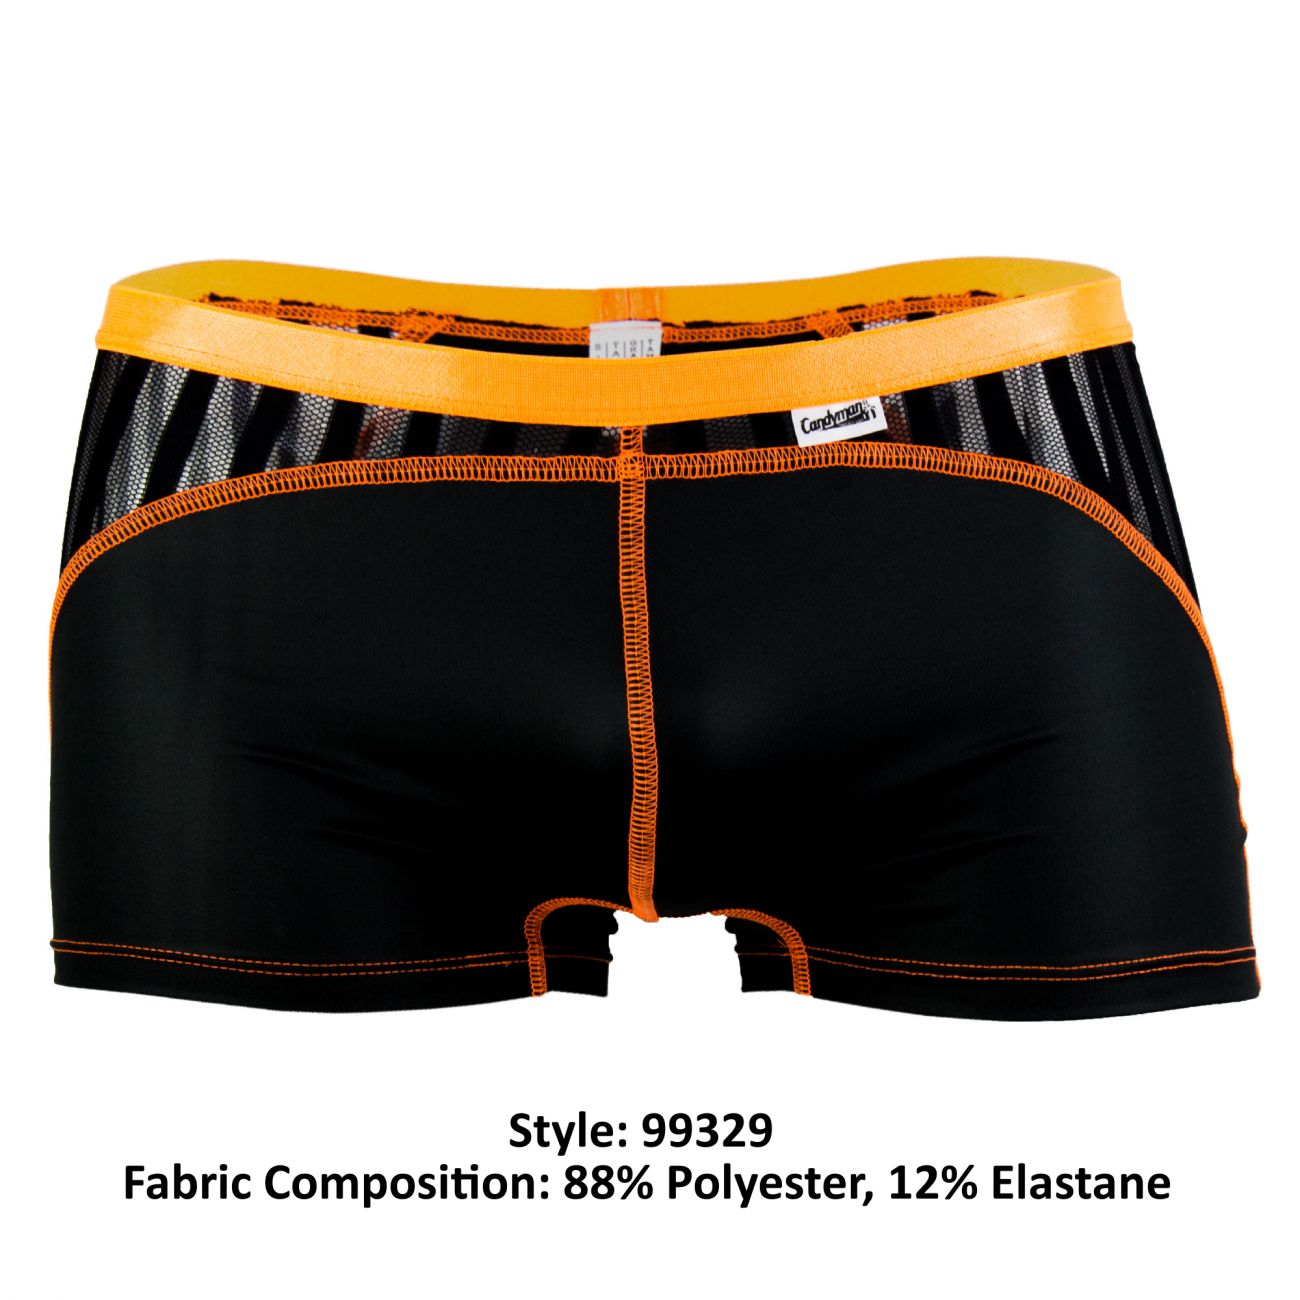 CandyMan 99393 Boxer Briefs in Black - Sexy Men's Underwear